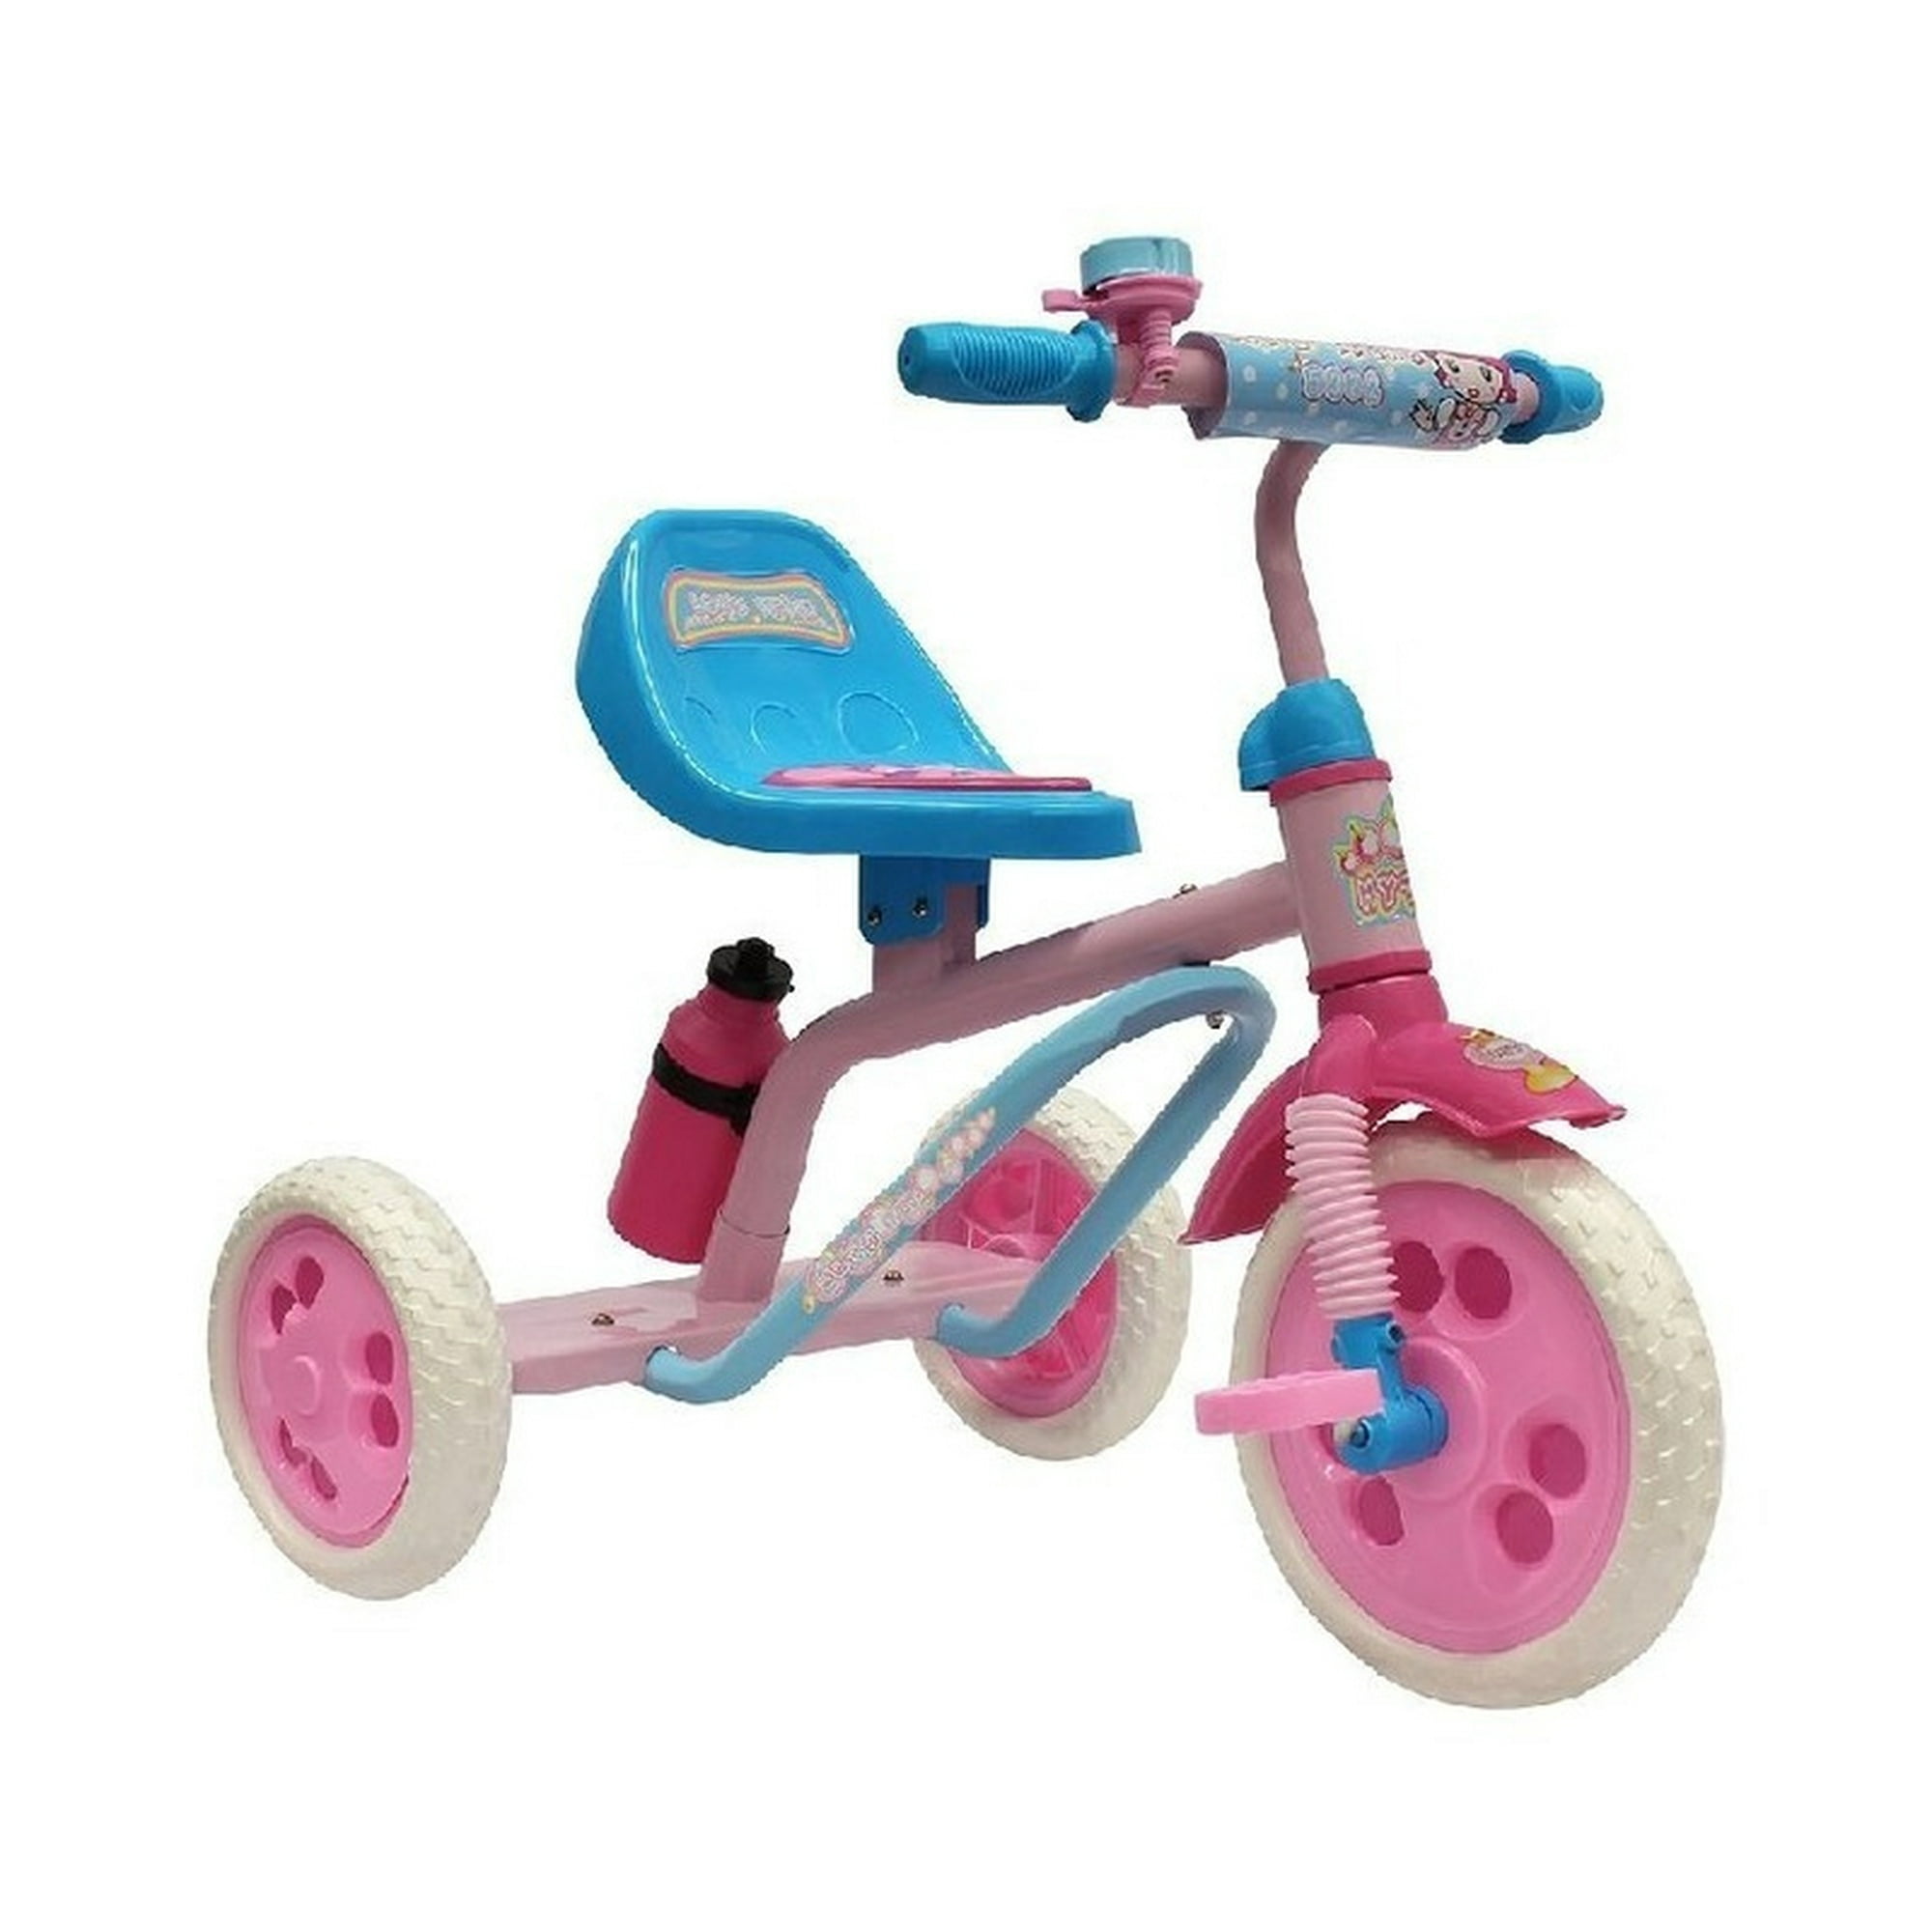 Triciclo Evolutivo The Baby Shop T-350 Multifuncional, llantas de goma  Beige 